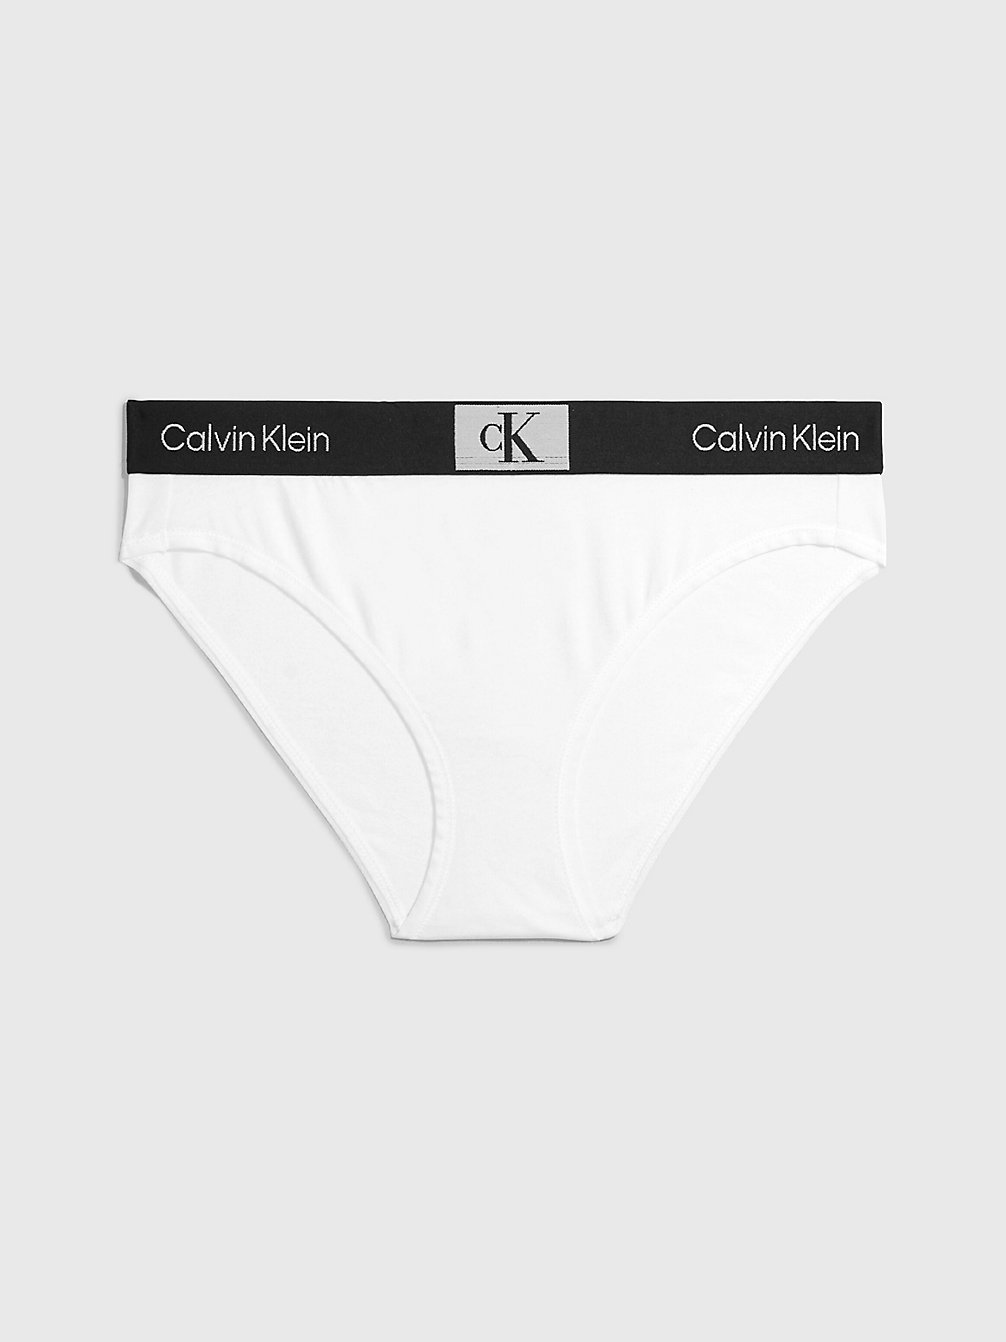 WHITE > Slips - Ck96 > undefined Damen - Calvin Klein